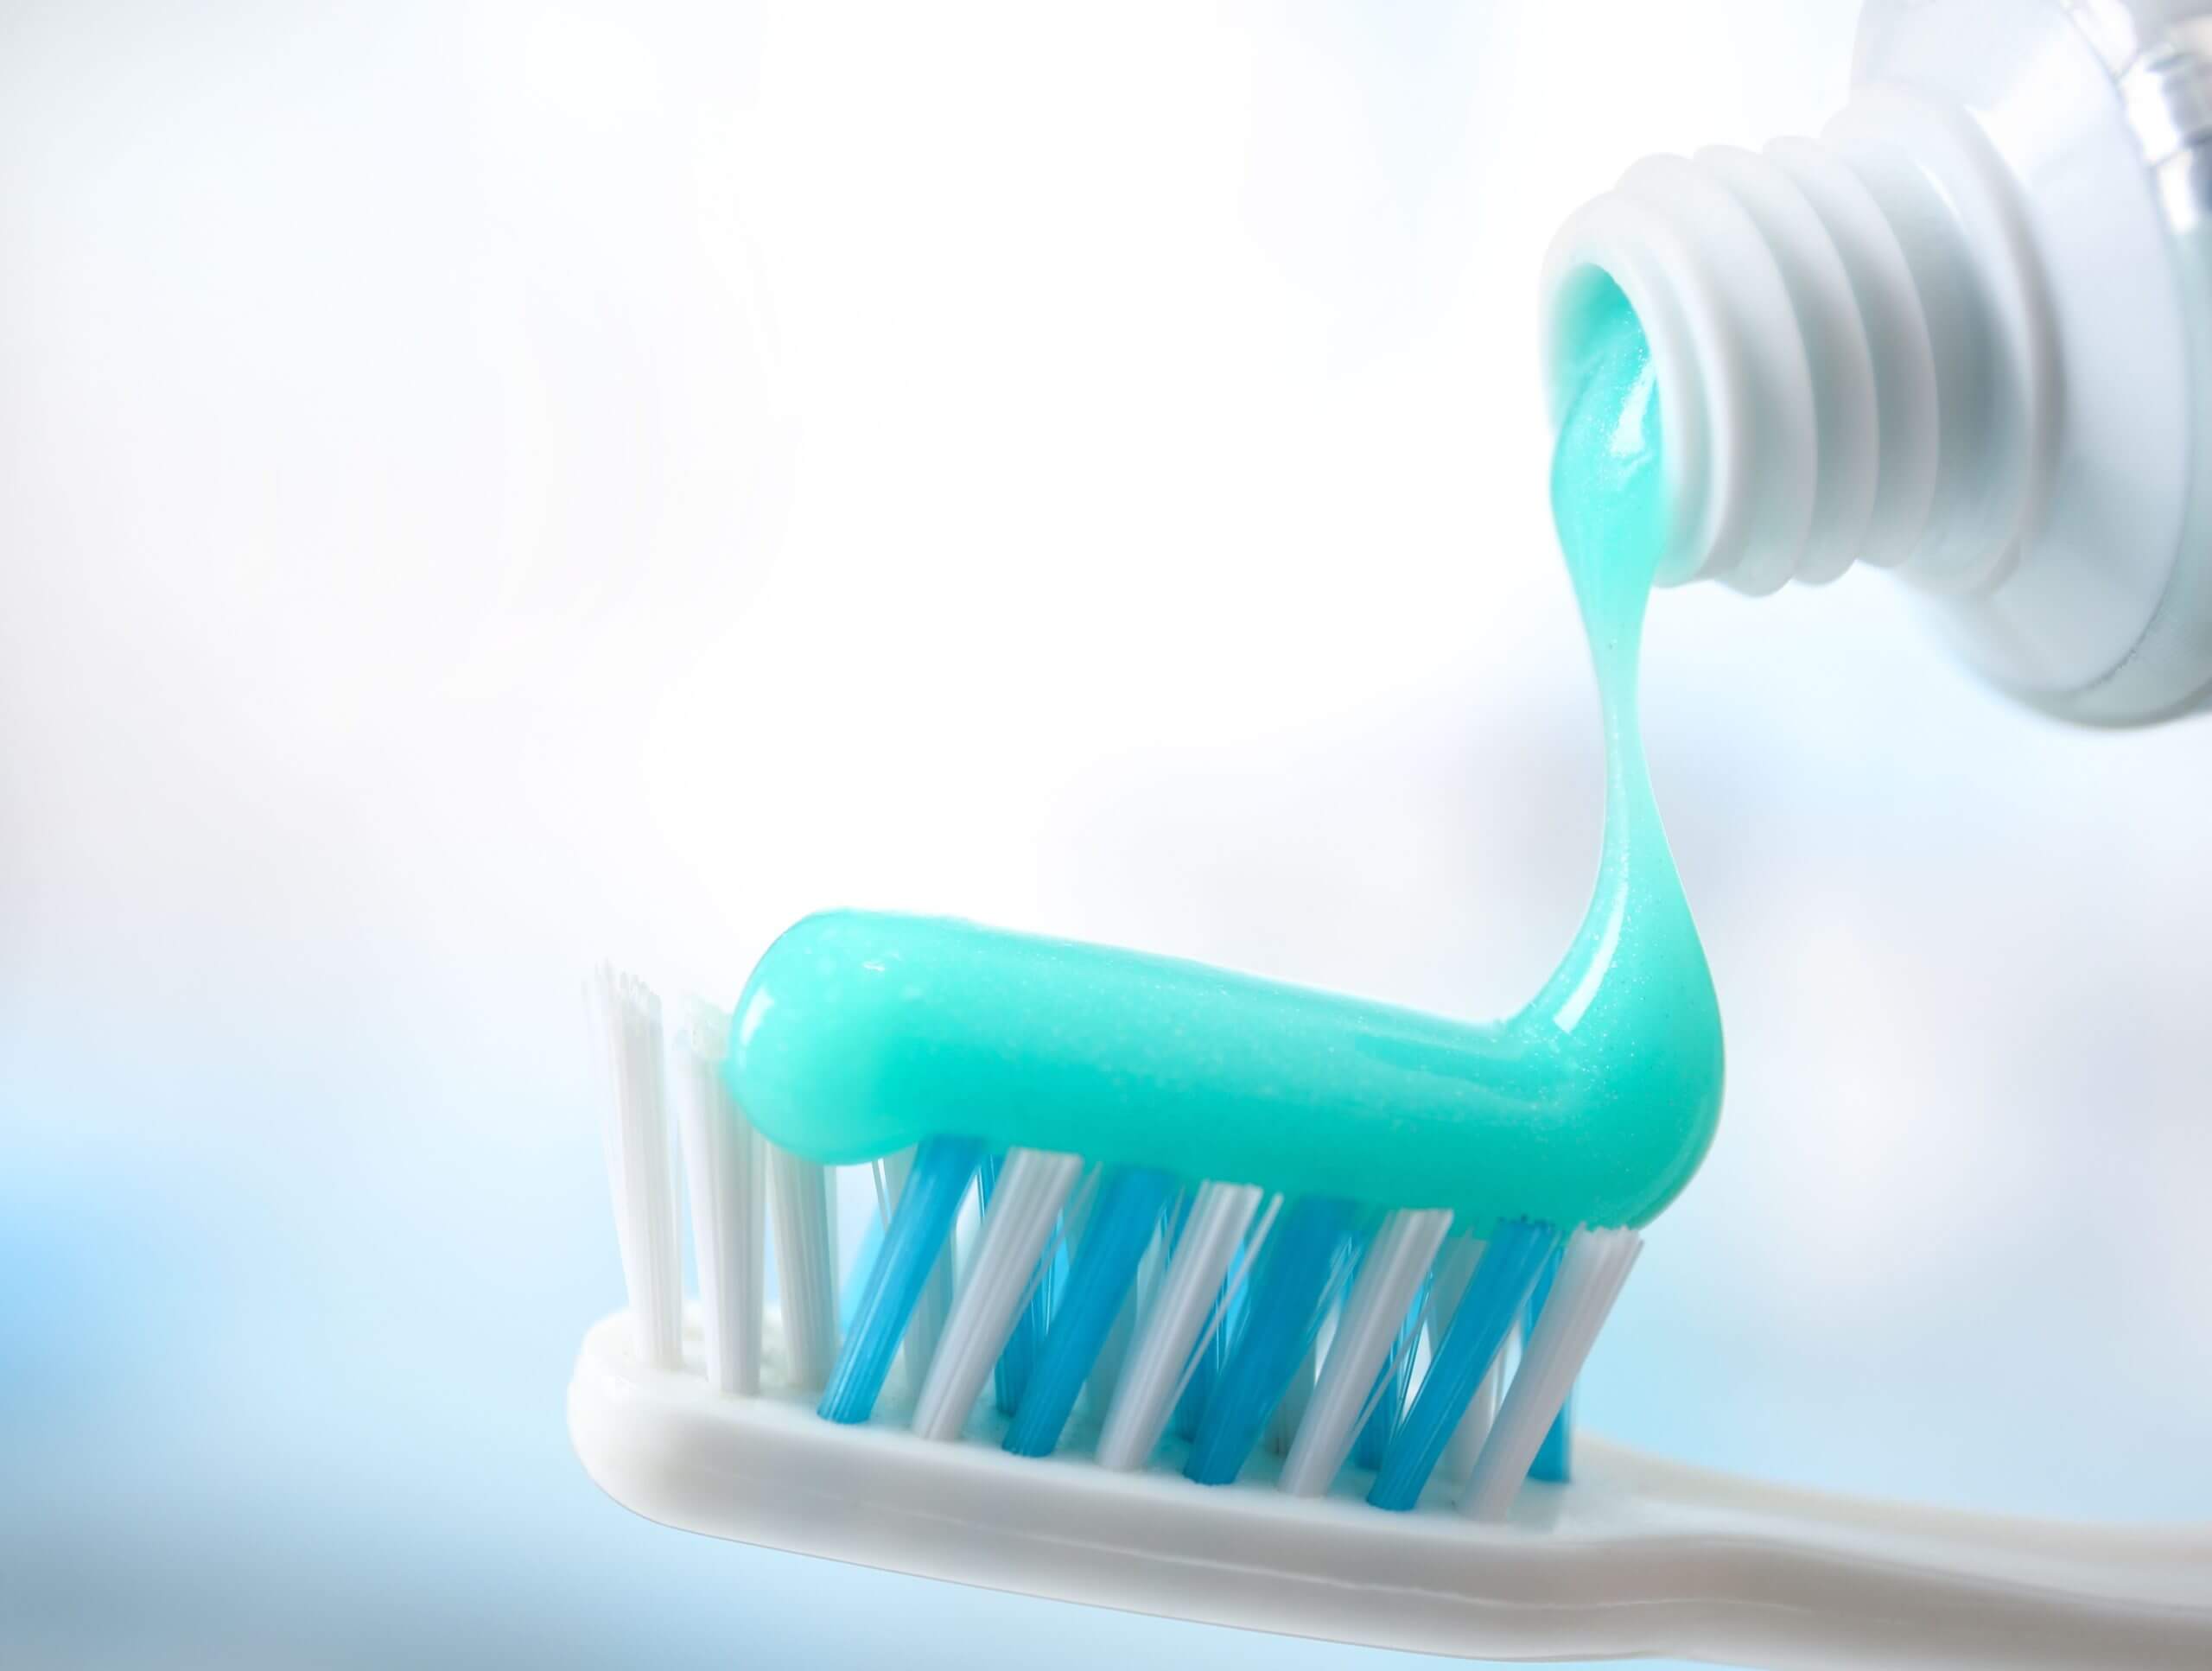 A proposito di Change: il dentifricio plastic free